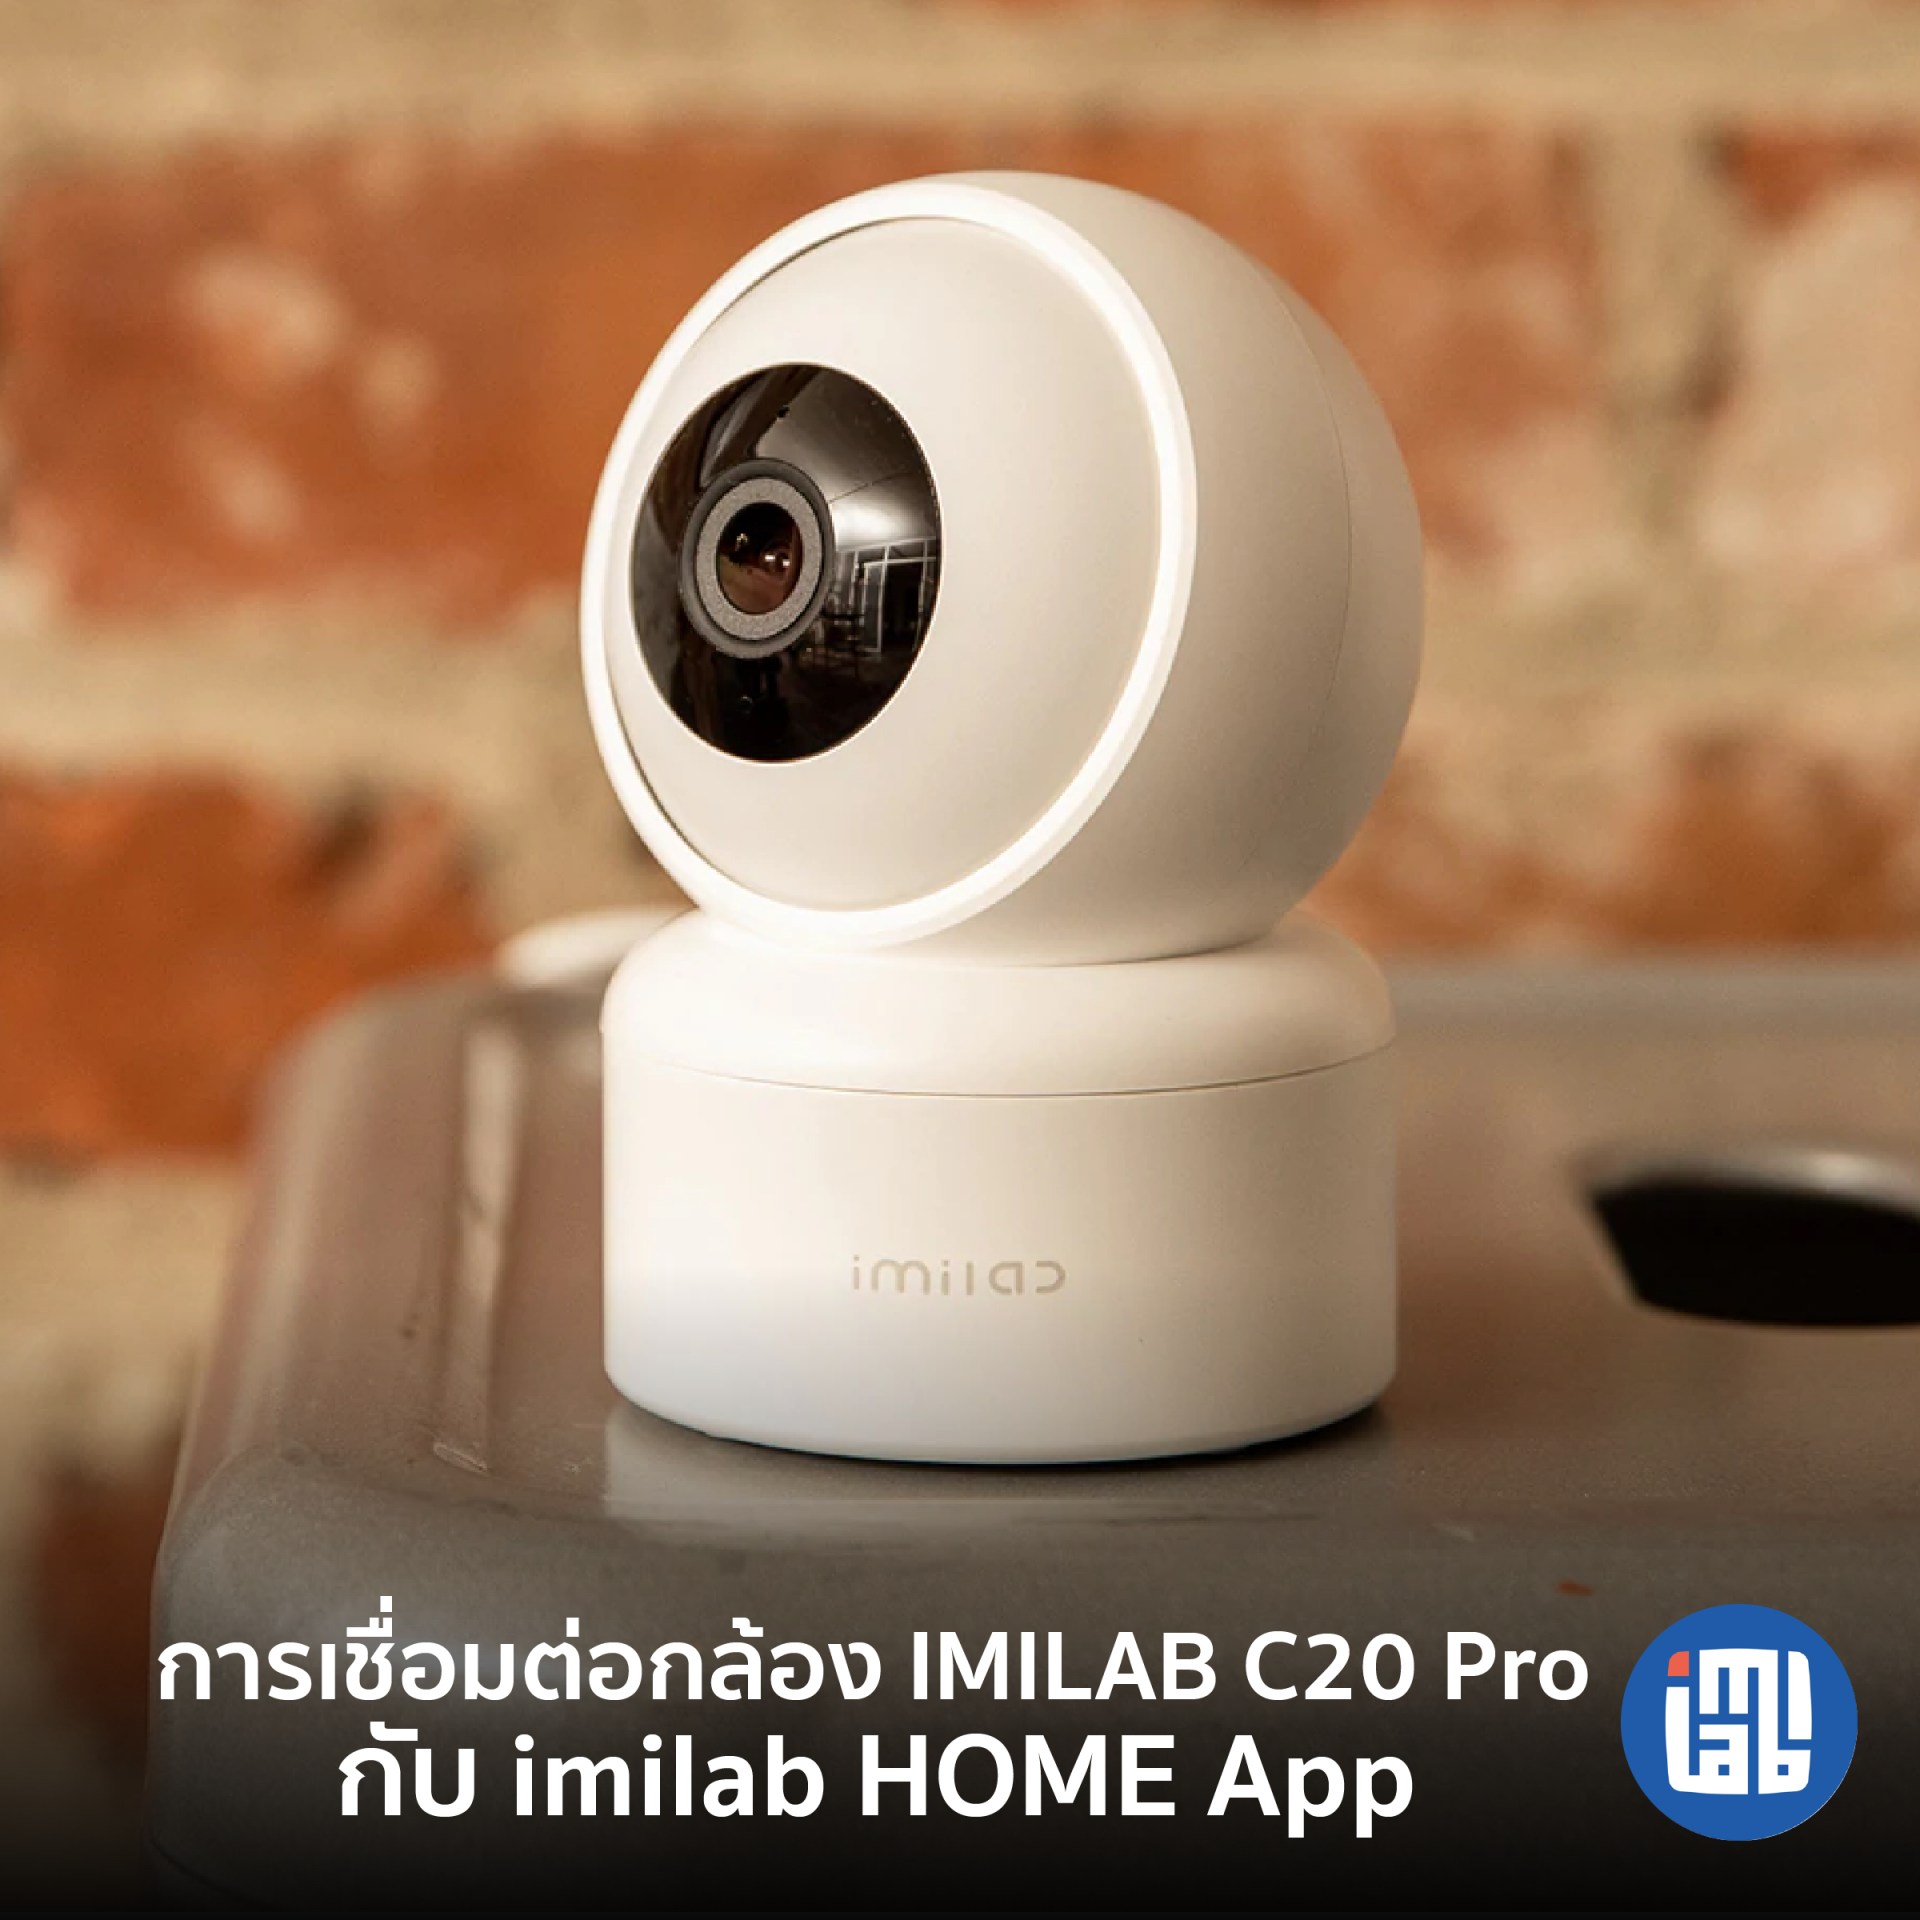 คู่มือการเชื่อมต่อ IMILAB C20 Pro กับ IMILAB Home App